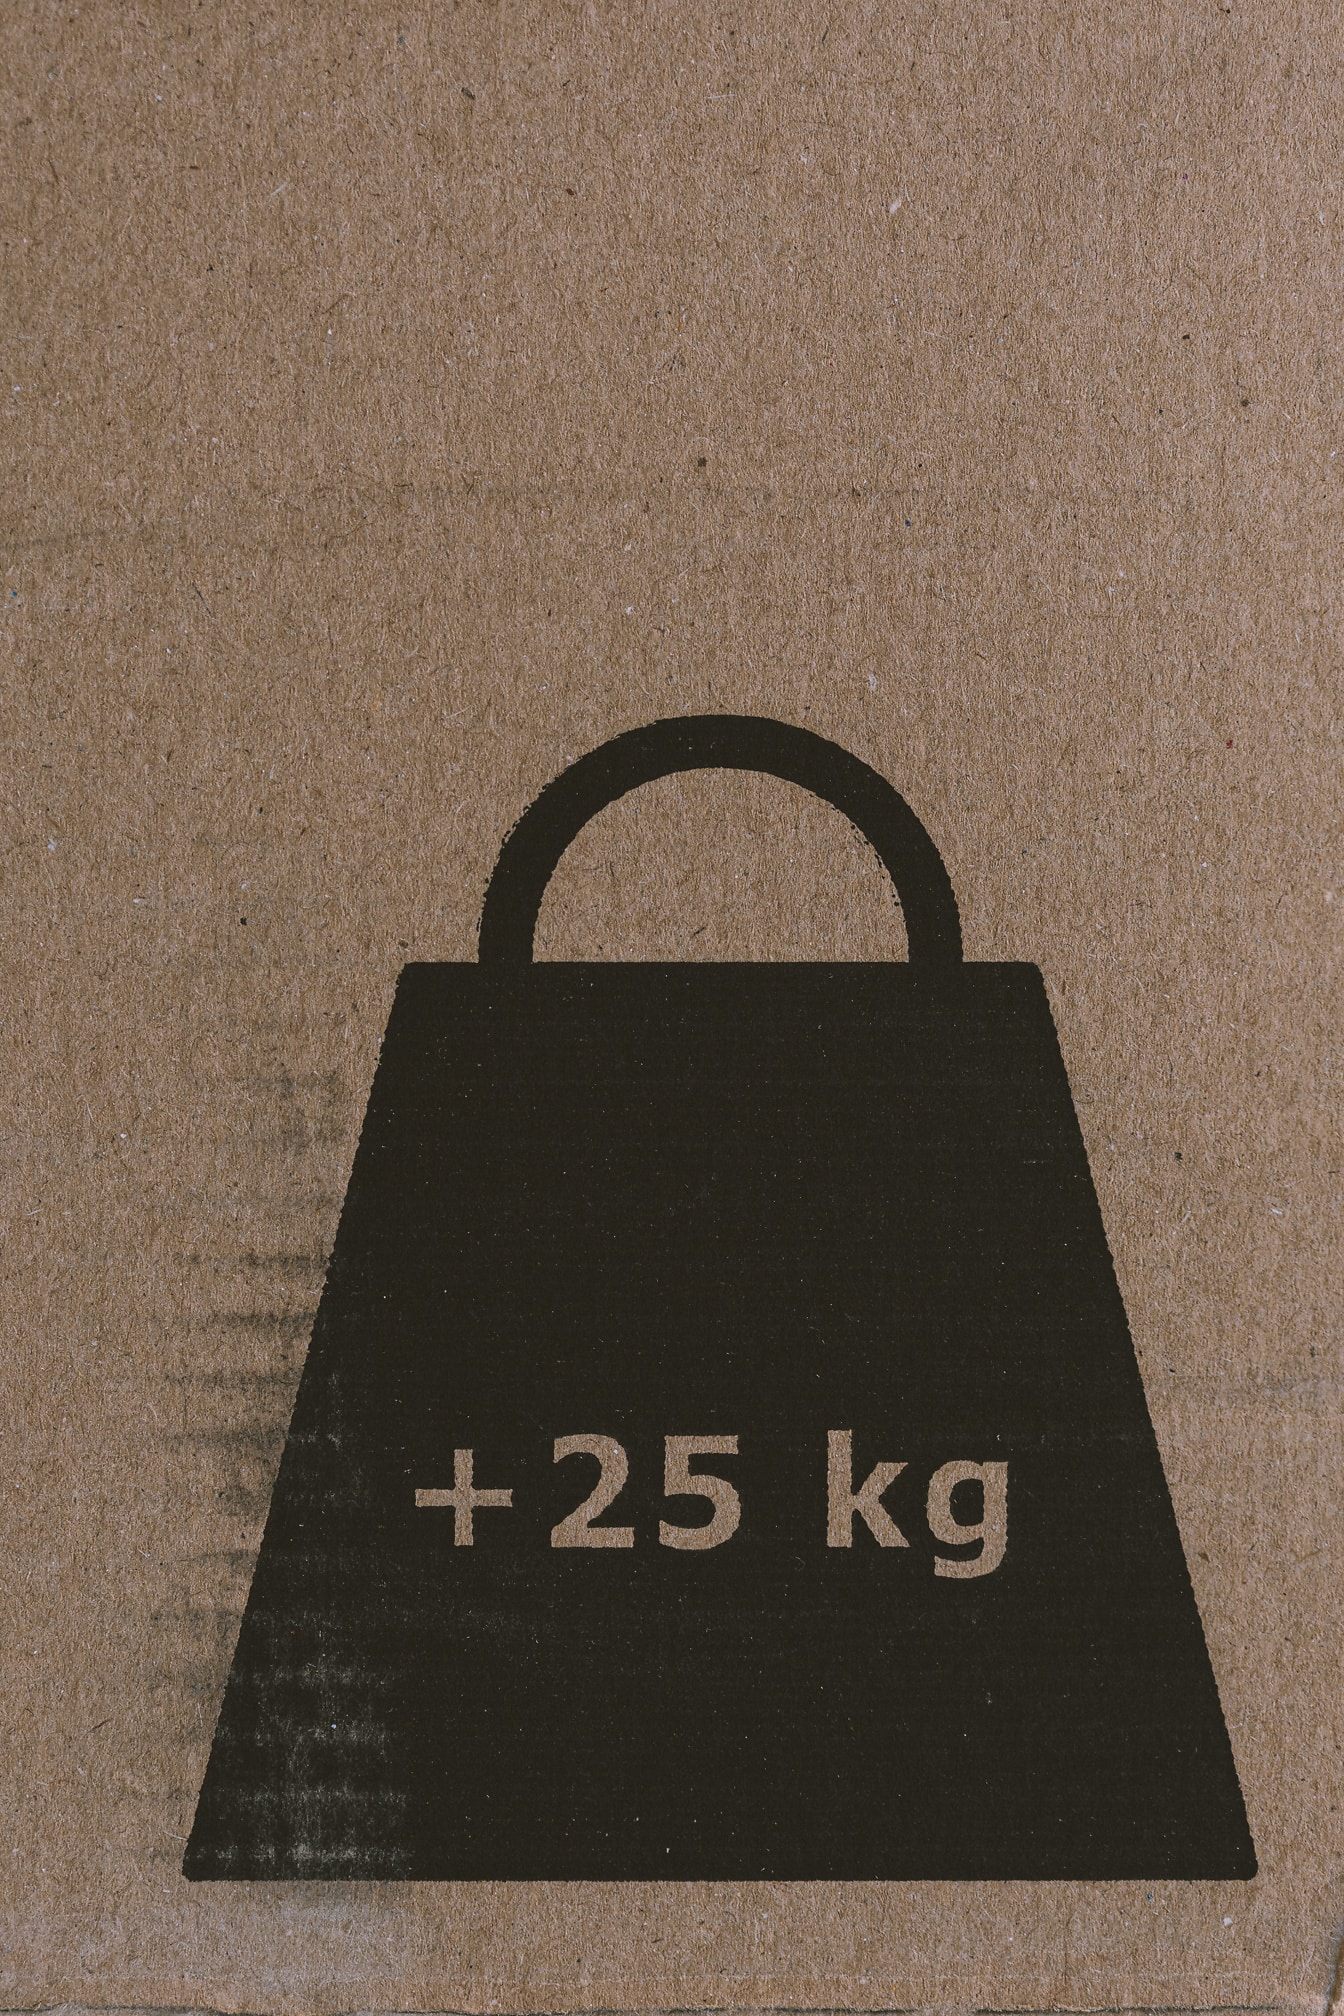 茶色の段ボールに (25 kg) キログラムの重量の記号